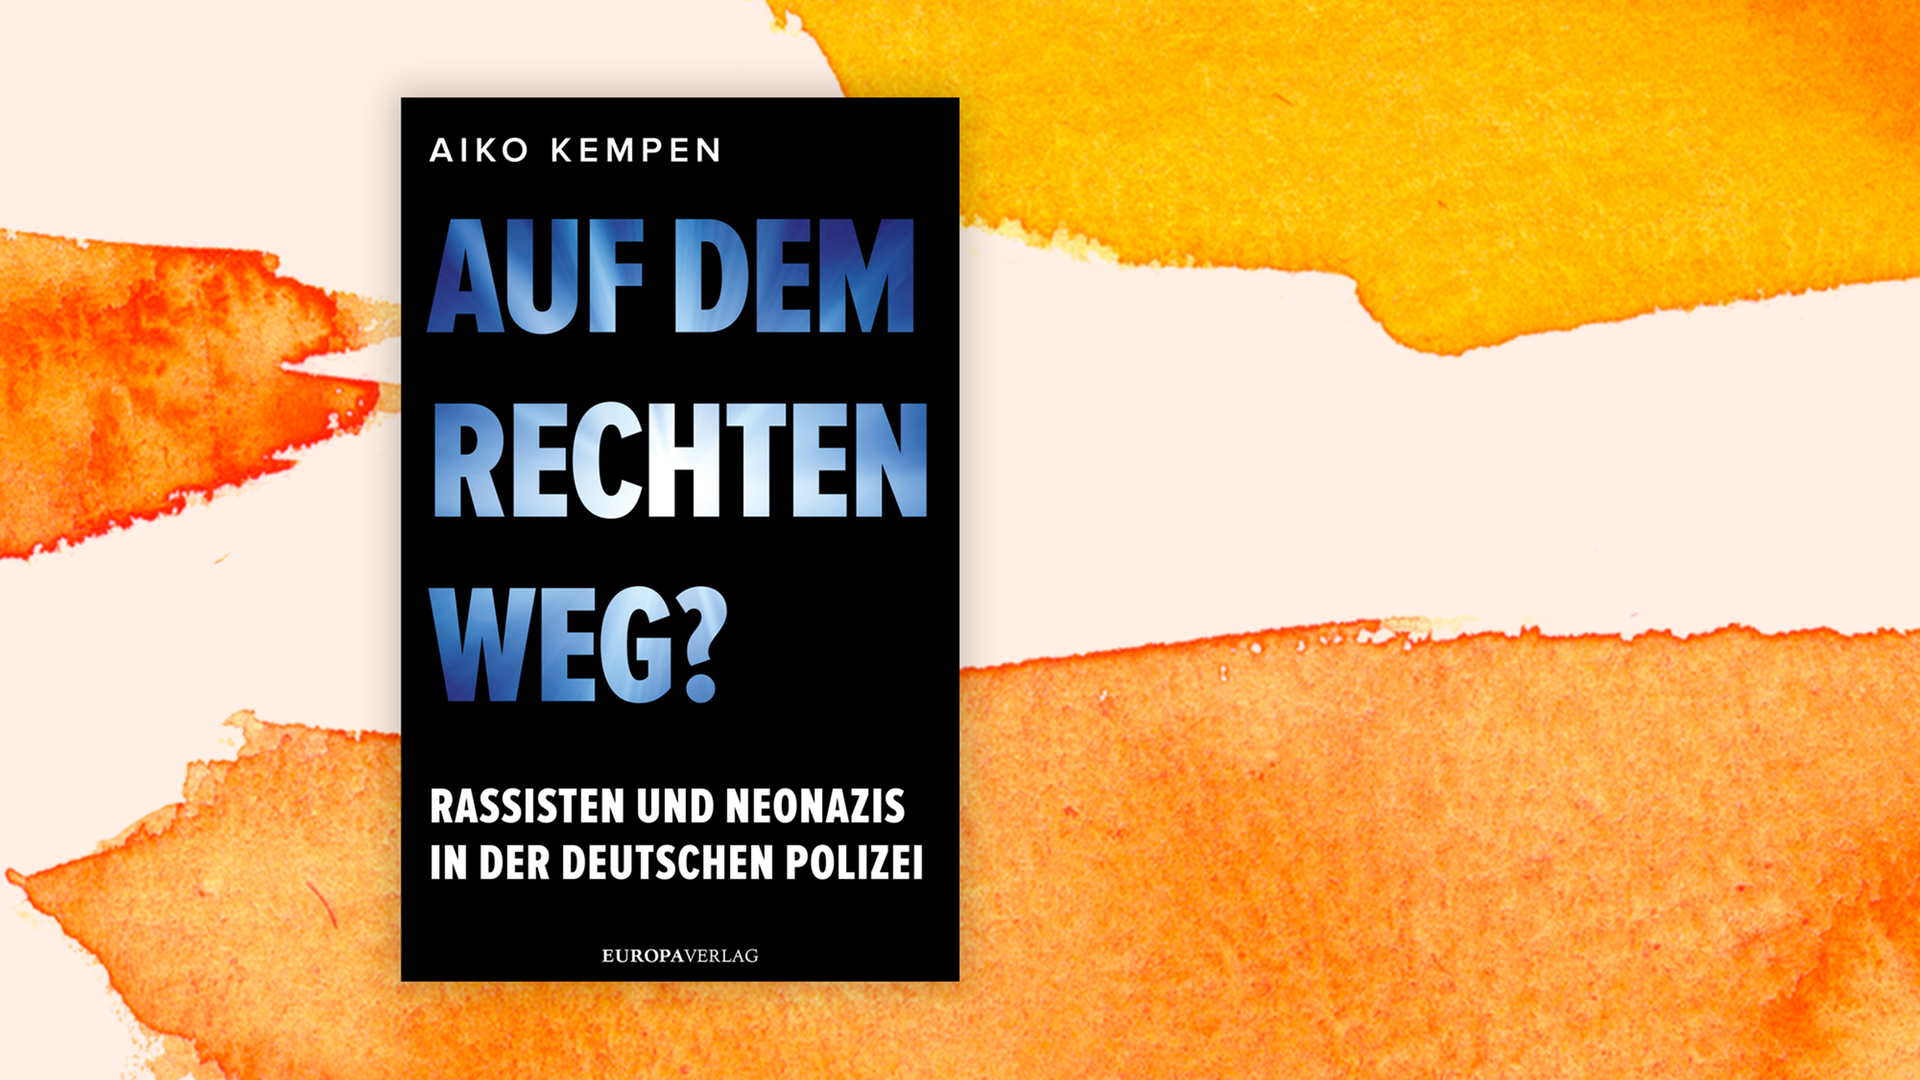 Zu sehen ist das Cover des Buches "Auf dem rechten Weg?" von Aiko Kempen.